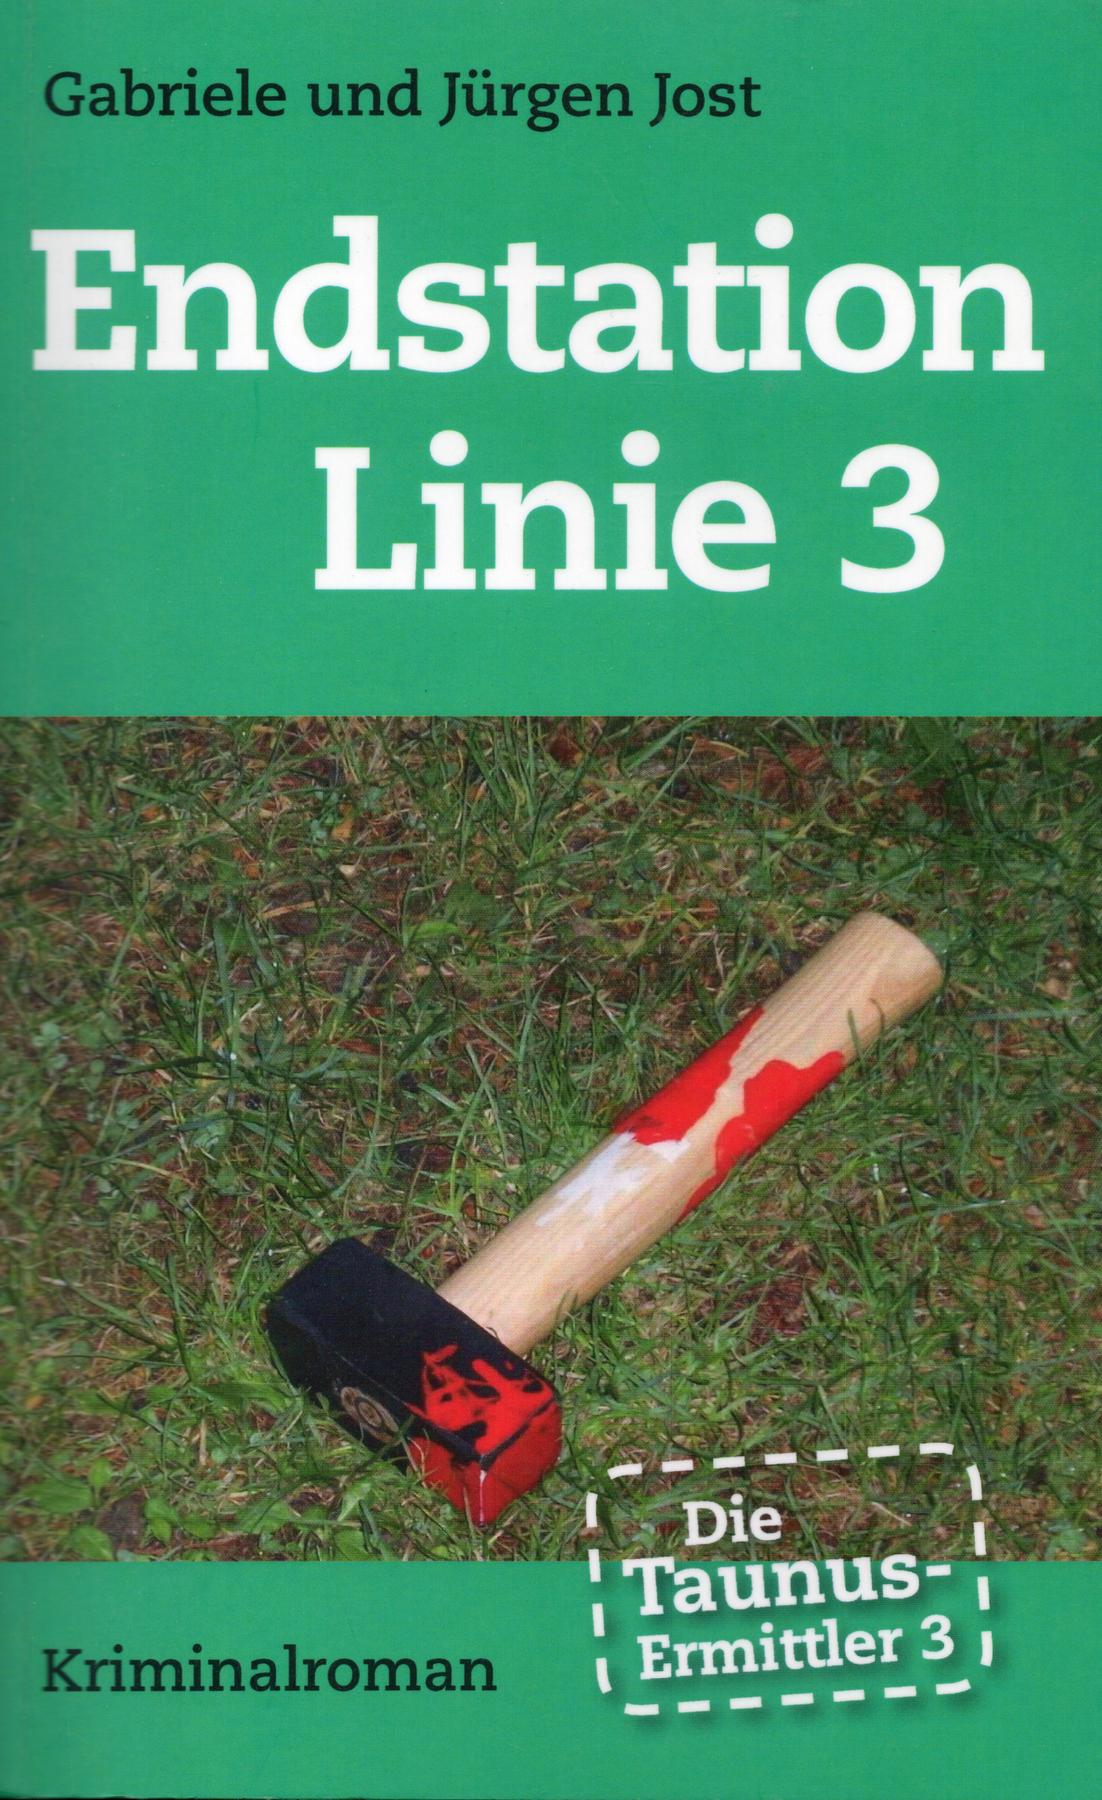 Die Taunus-Ermittler (Band 3) - Endstation Linie 3 (Mai 2012)